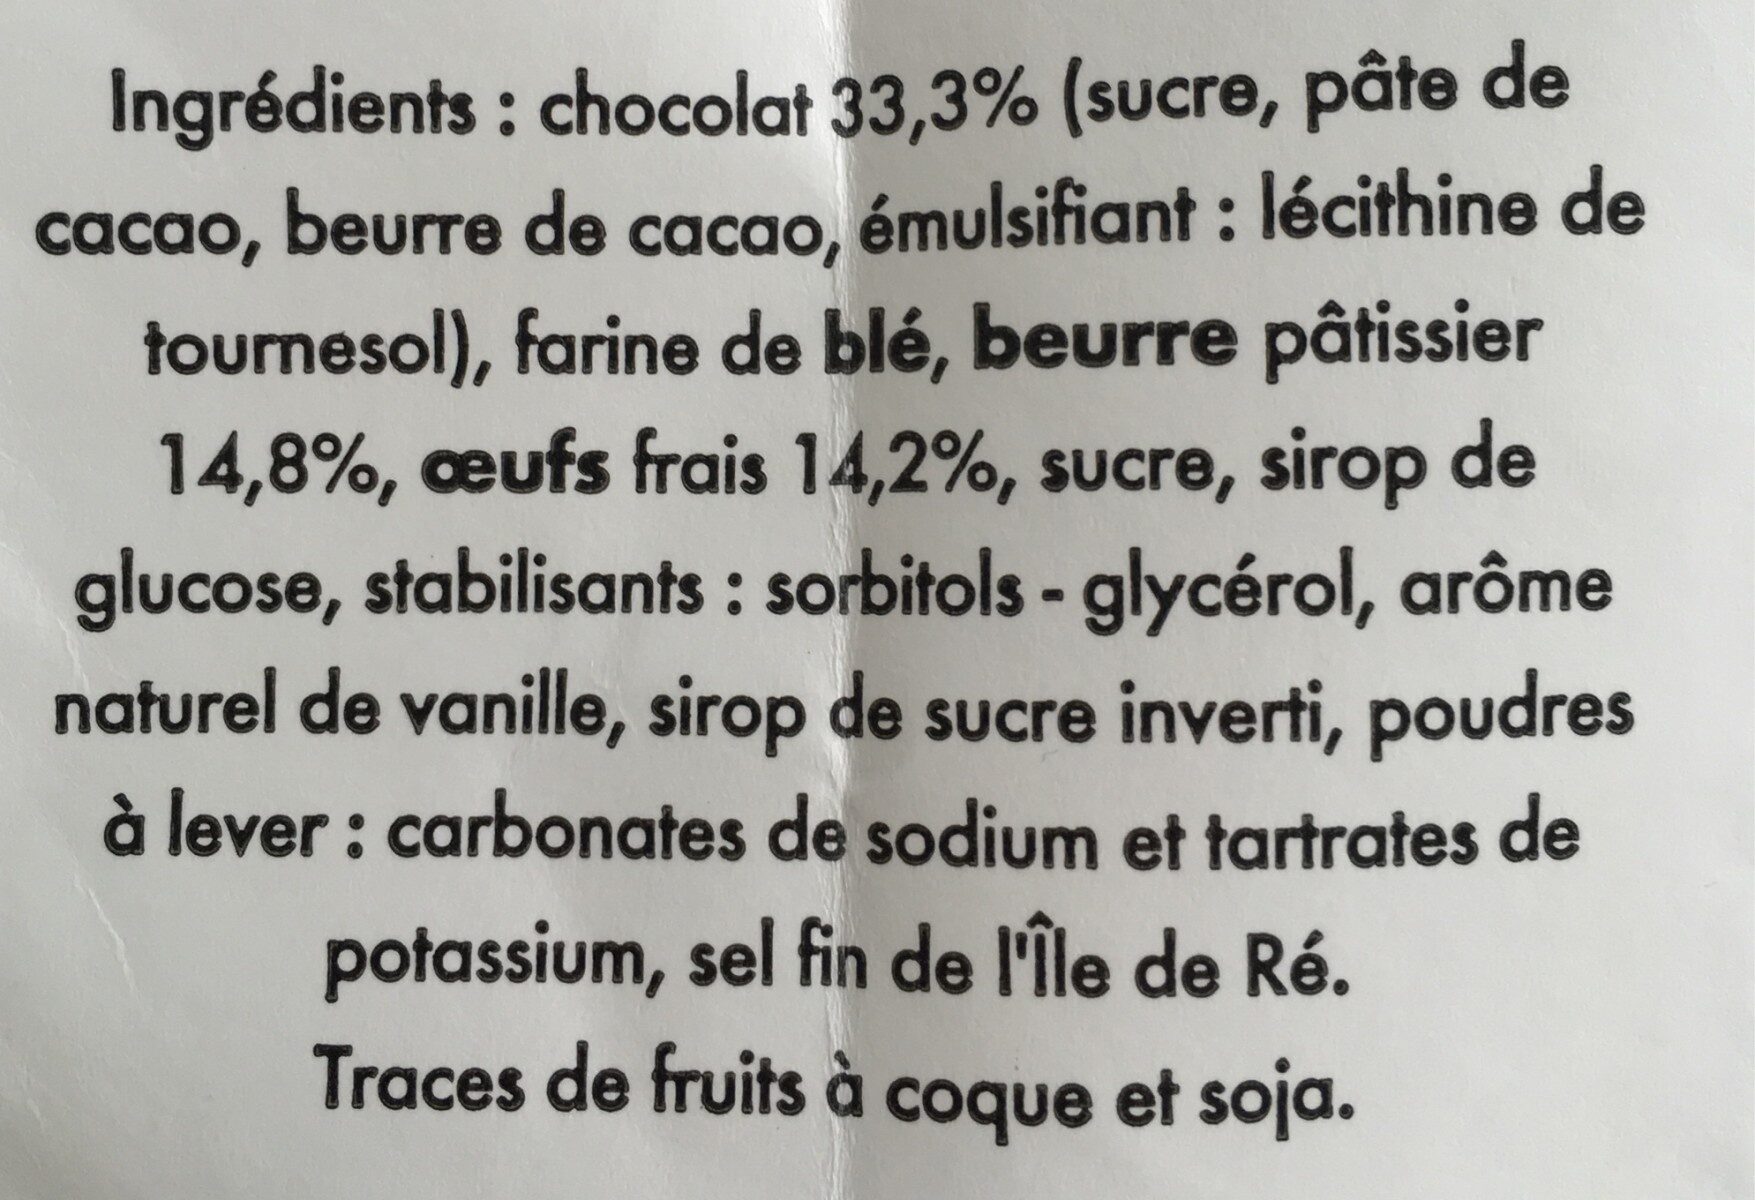 La madeleine coque chocolat - Ingrédients